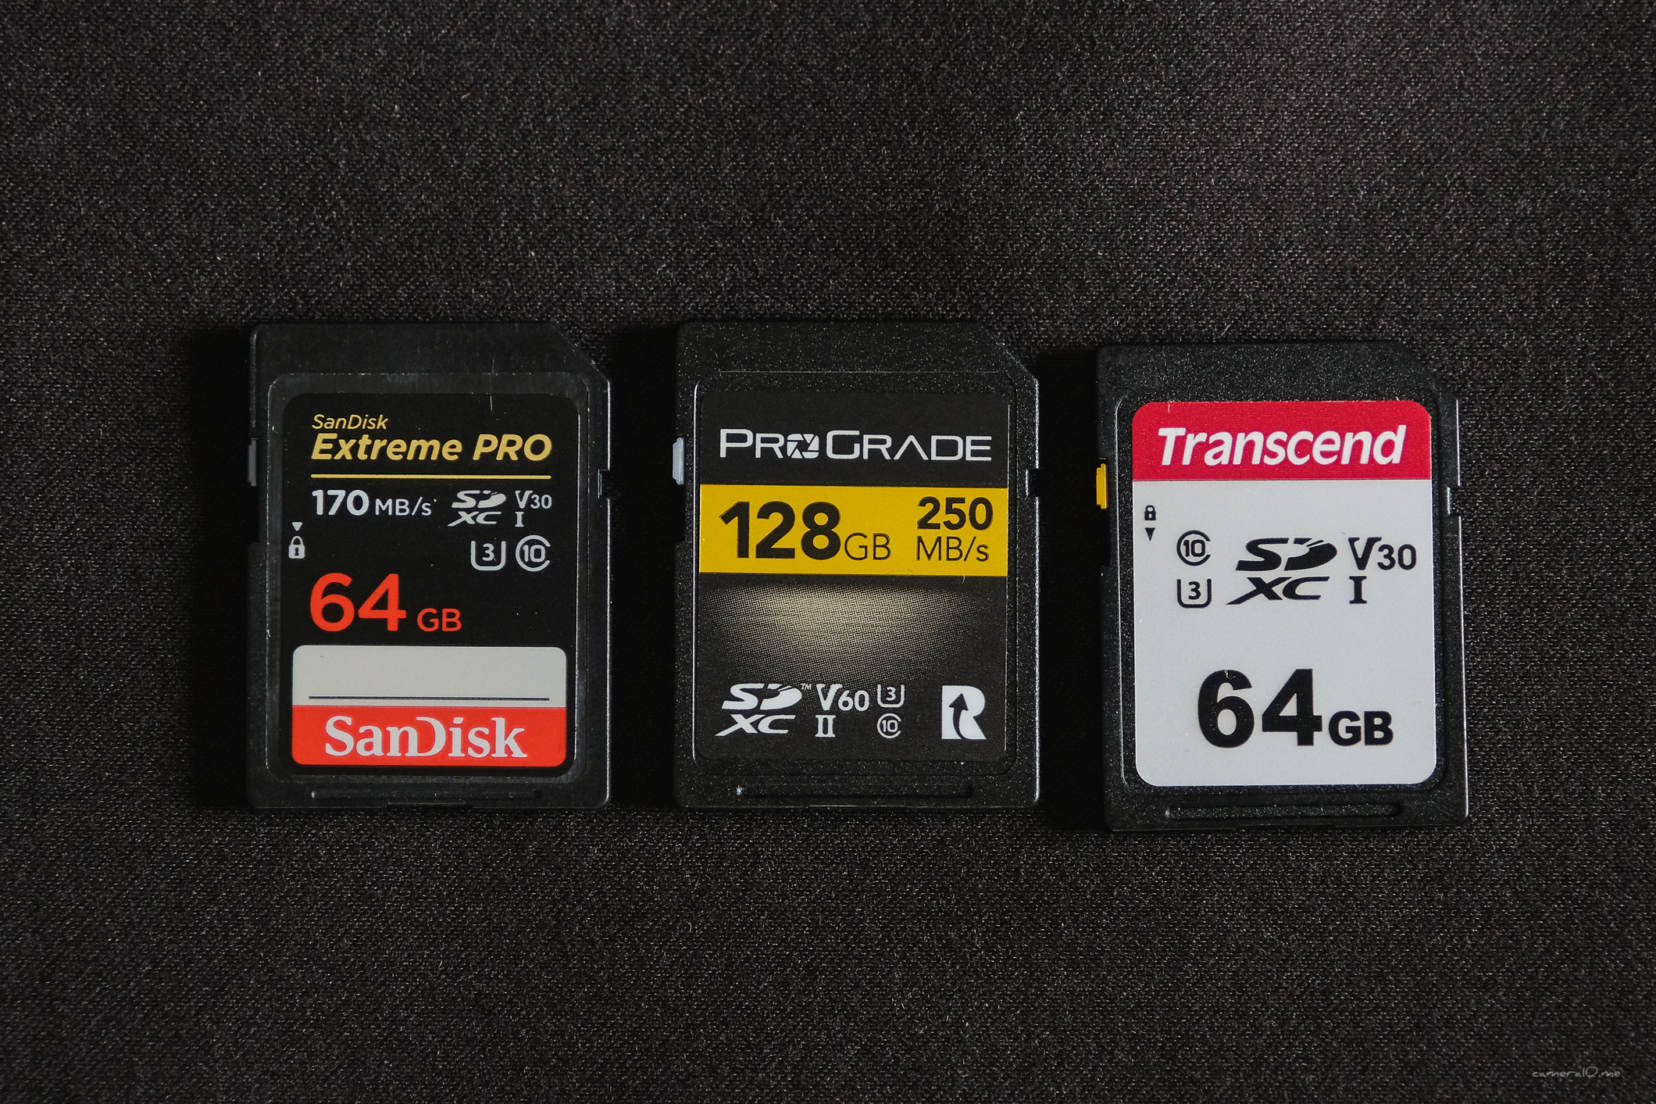 ProGrade DigitalのSDカードはじめました。4K動画にぴったりなUHSII 